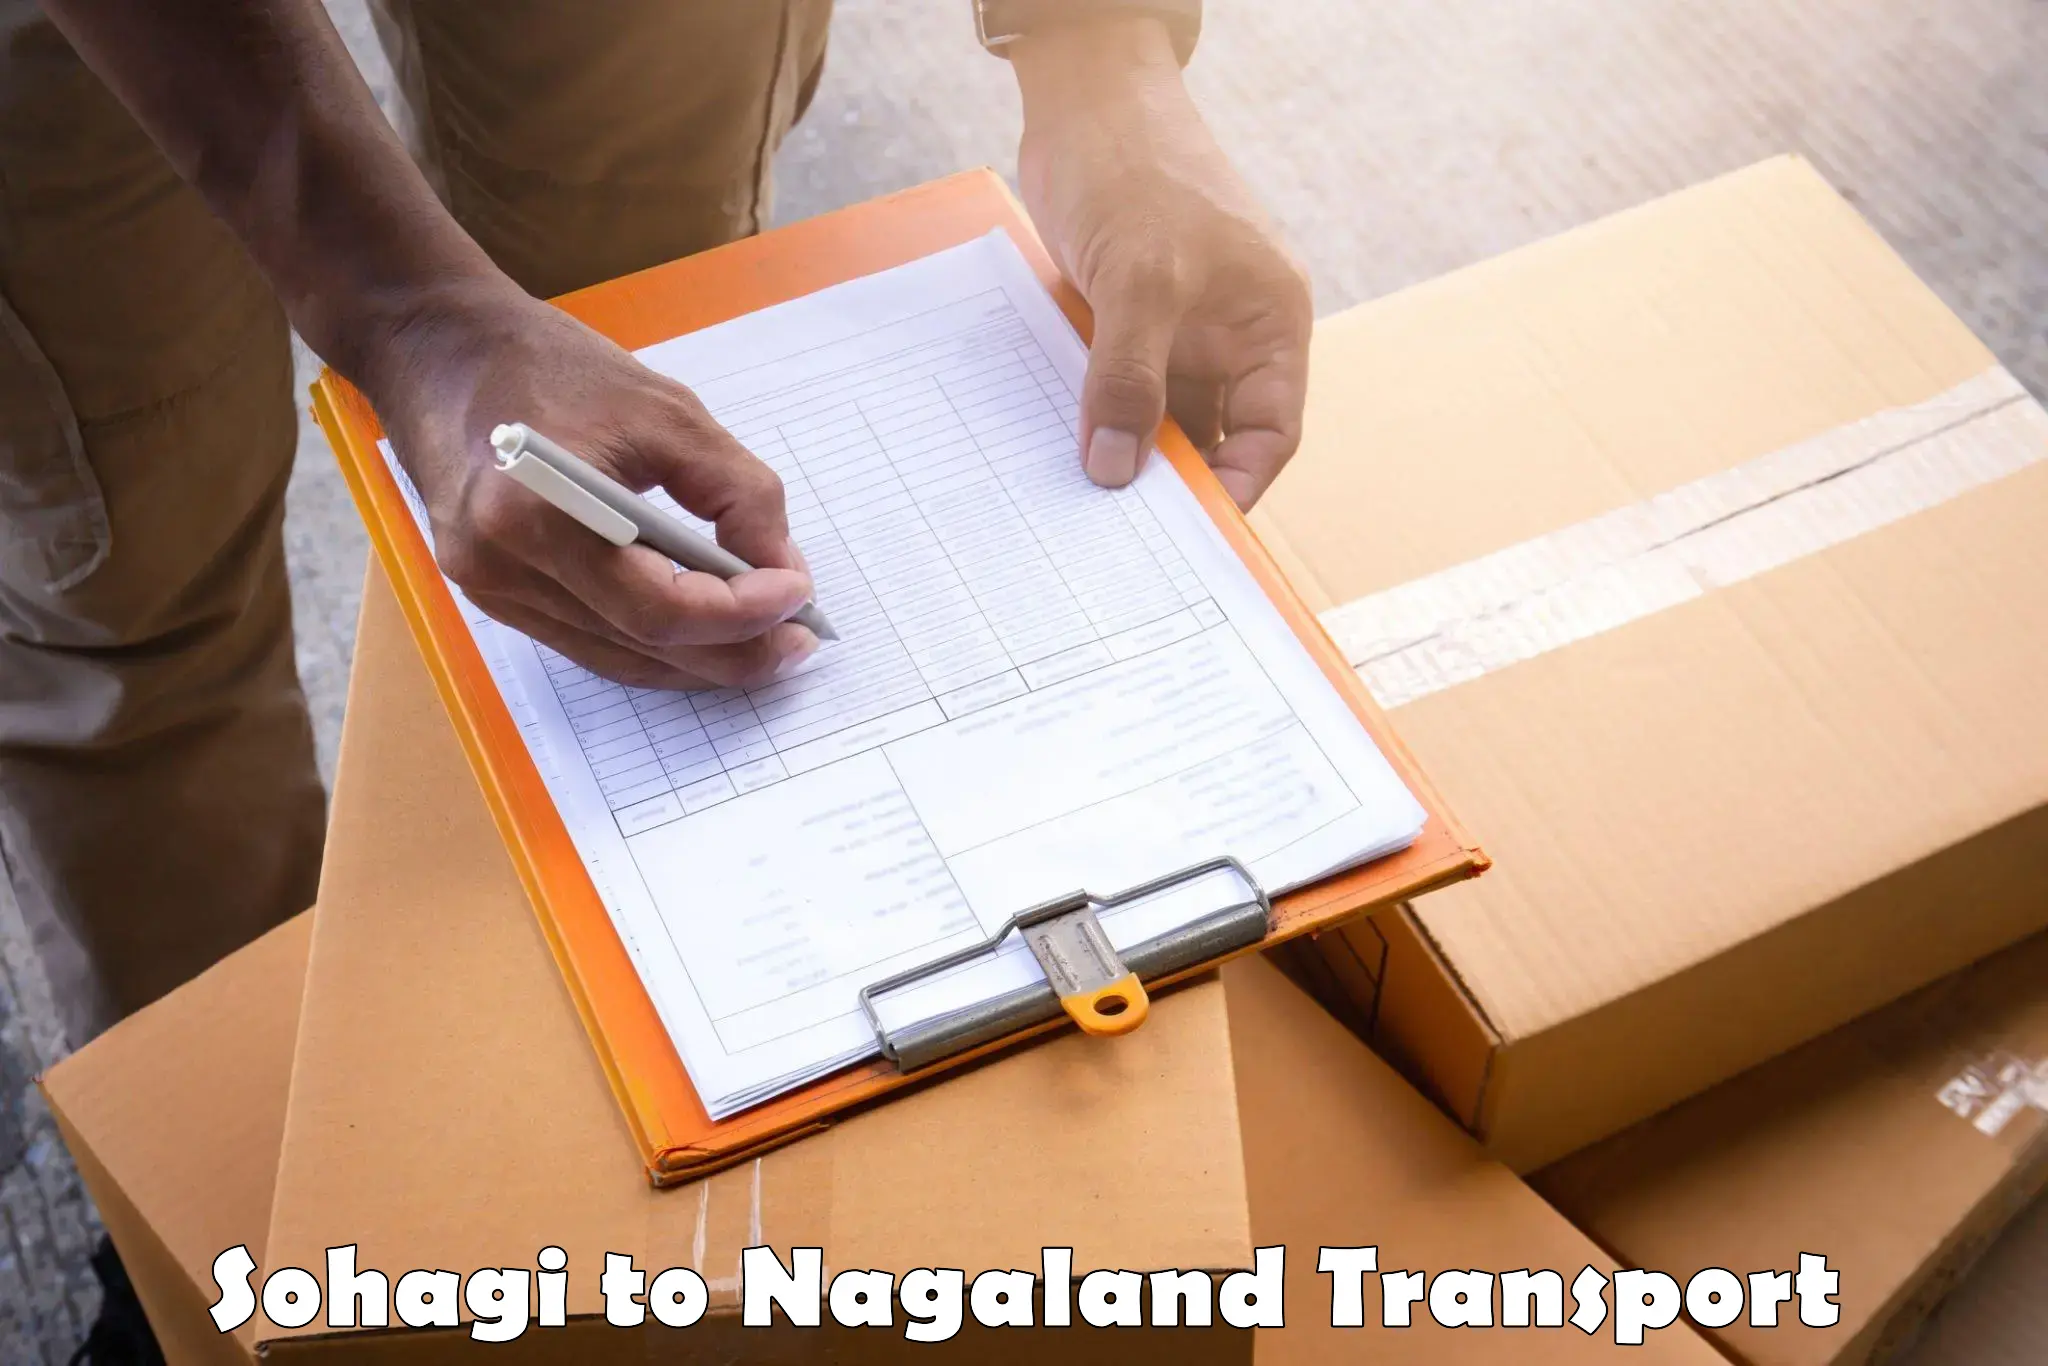 Cargo train transport services Sohagi to Nagaland